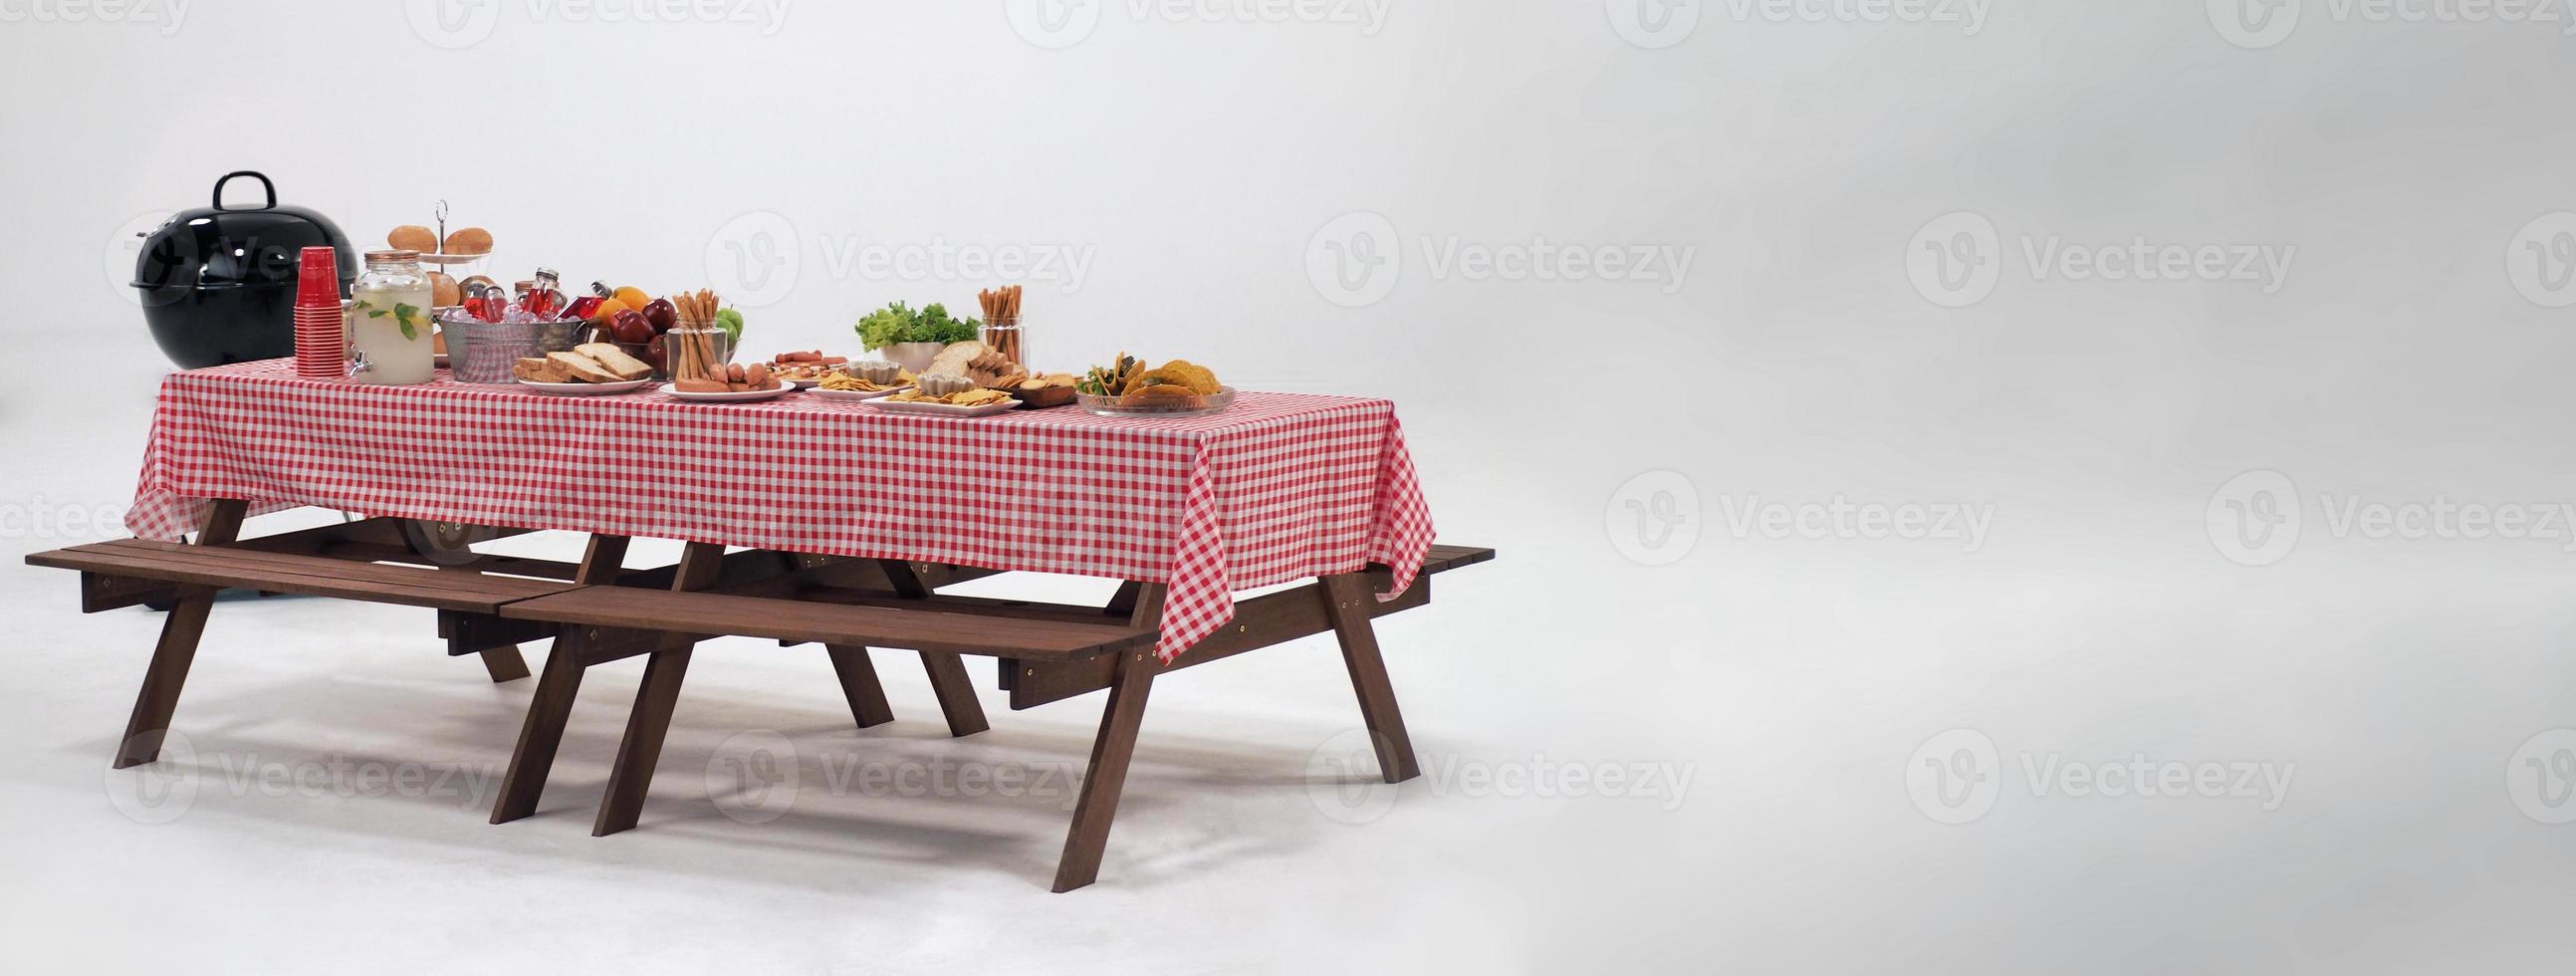 onderdak Onveilig plug picknicktafel en rood geruit tafelkleed met eten en drinken voor  buitenfeest. geïsoleerd 5913101 Stockfoto